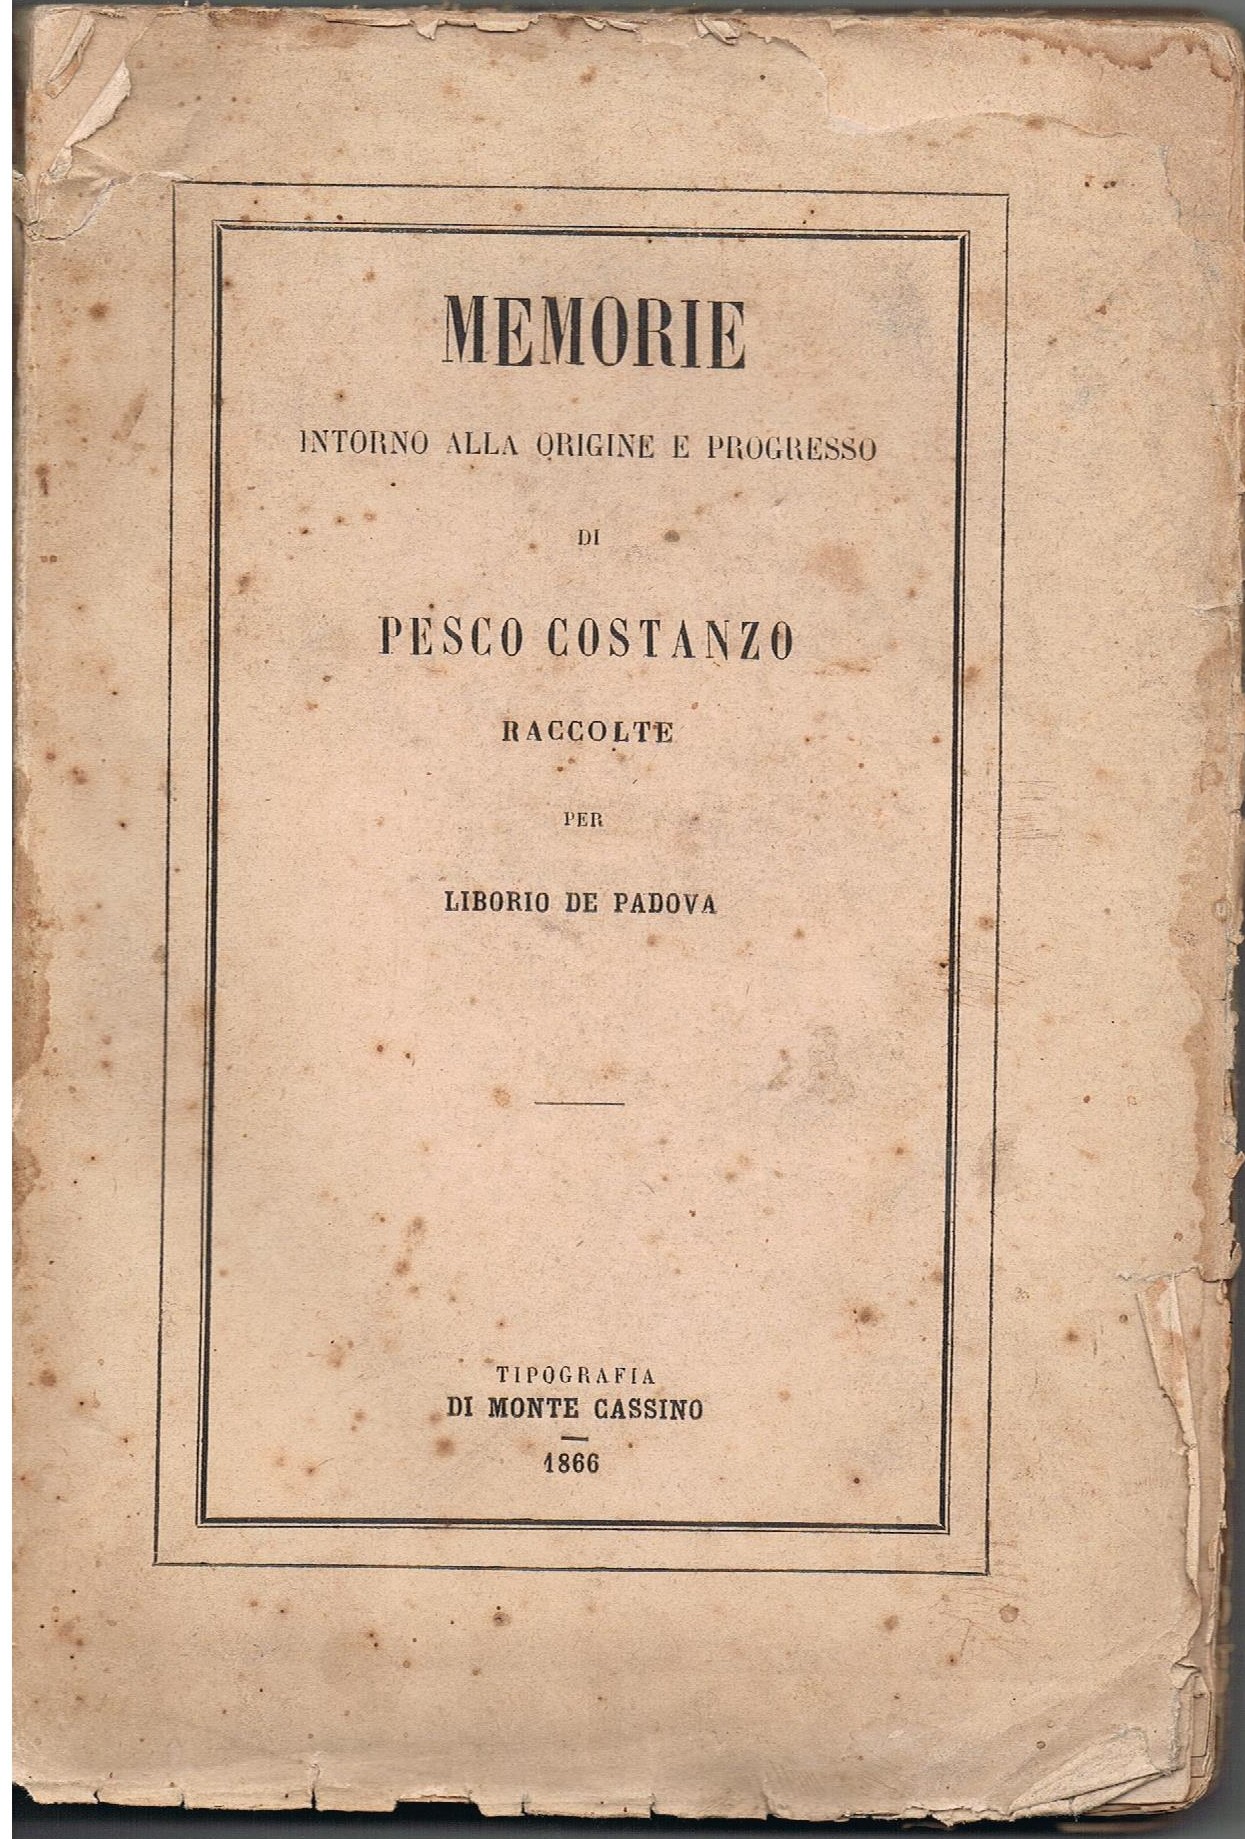 Memorie intorno alla origine e progresso di Pesco Costanzo.